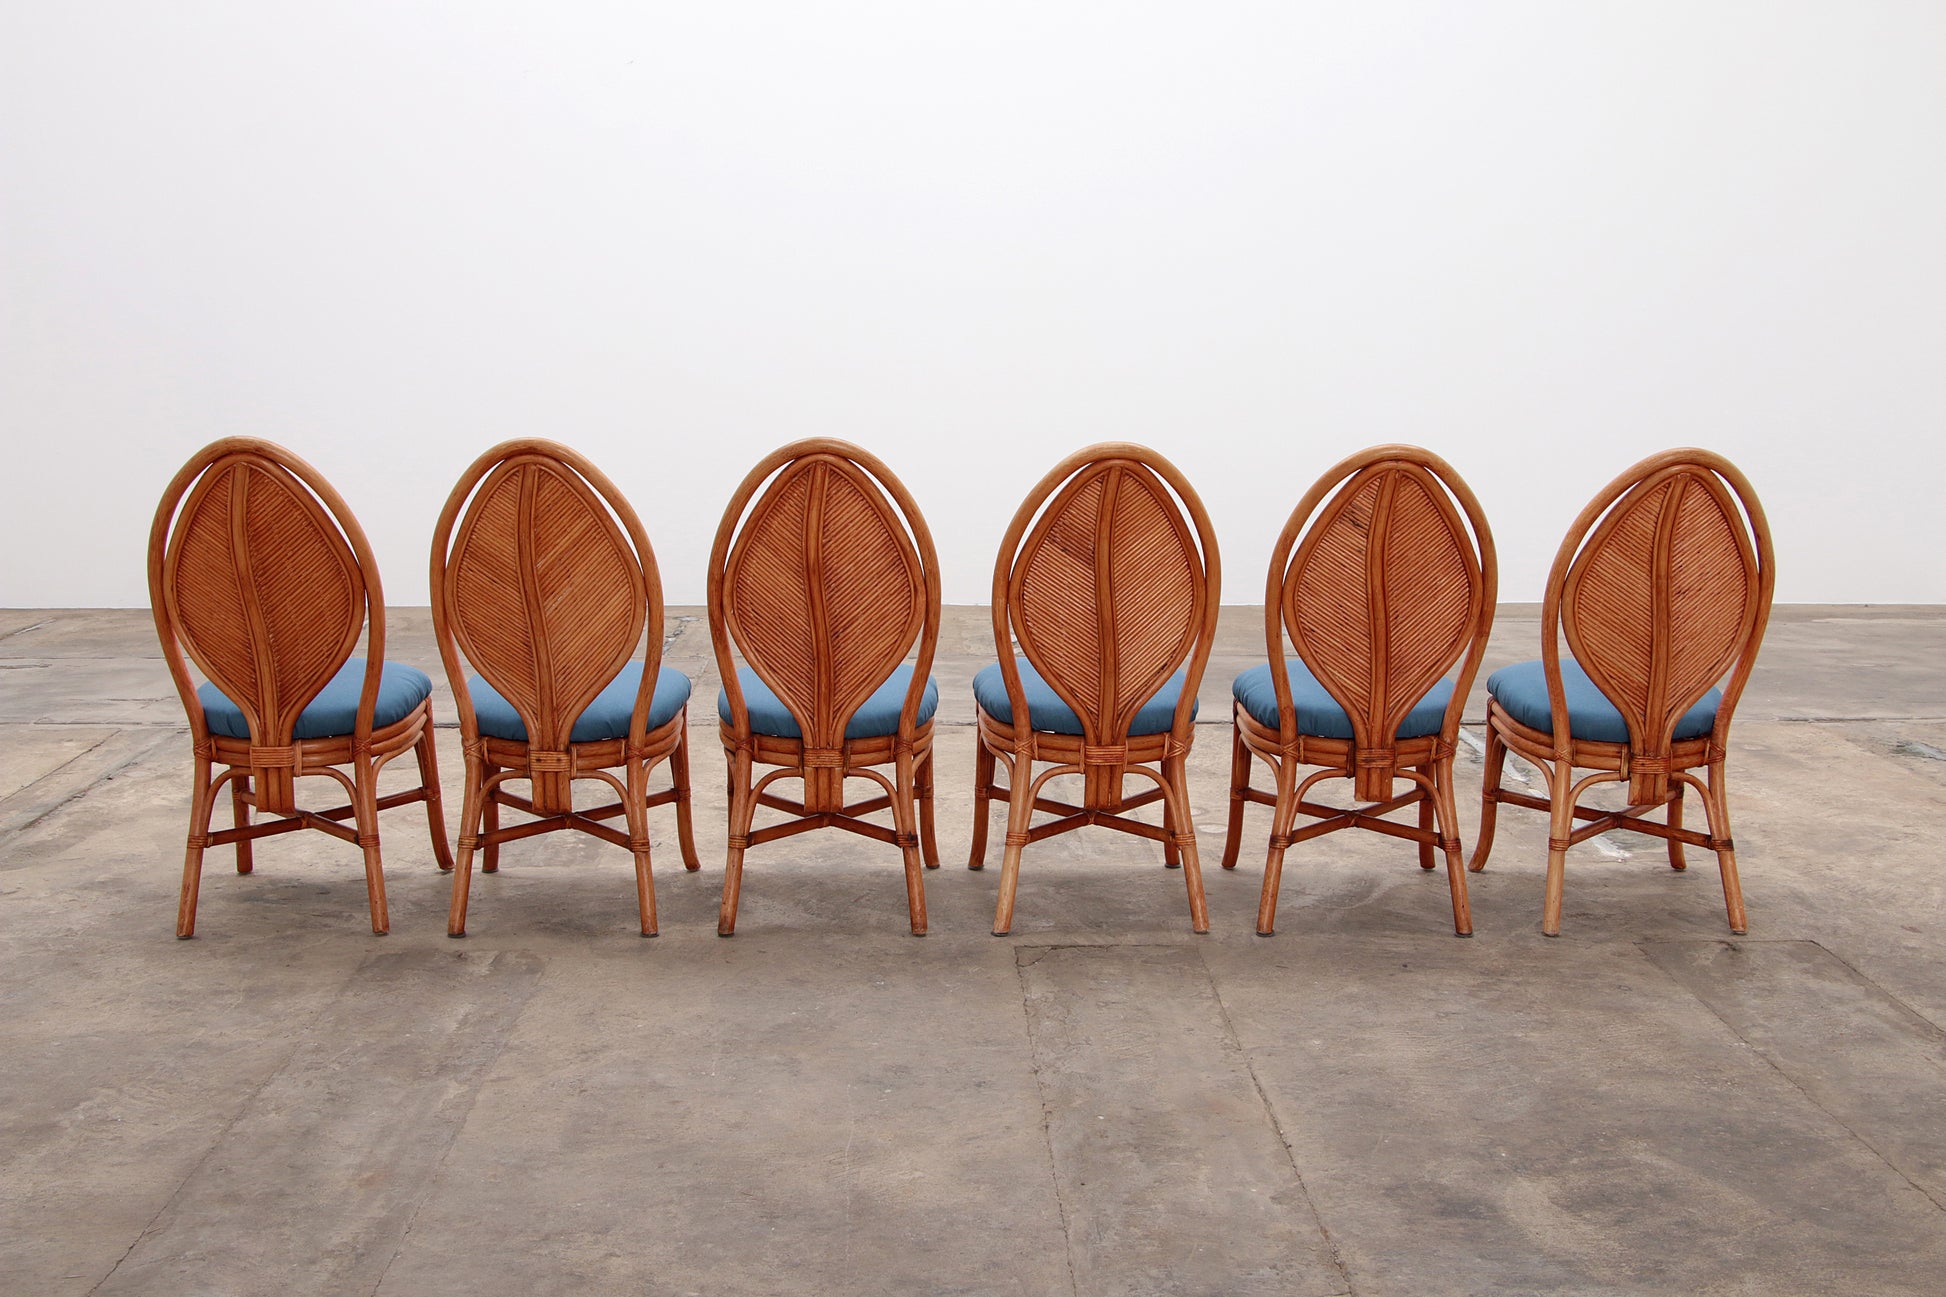 Bohemian Bamboe Mcguire  eettafel set met 6 palmblad stoelen,1960 Frankrijk.